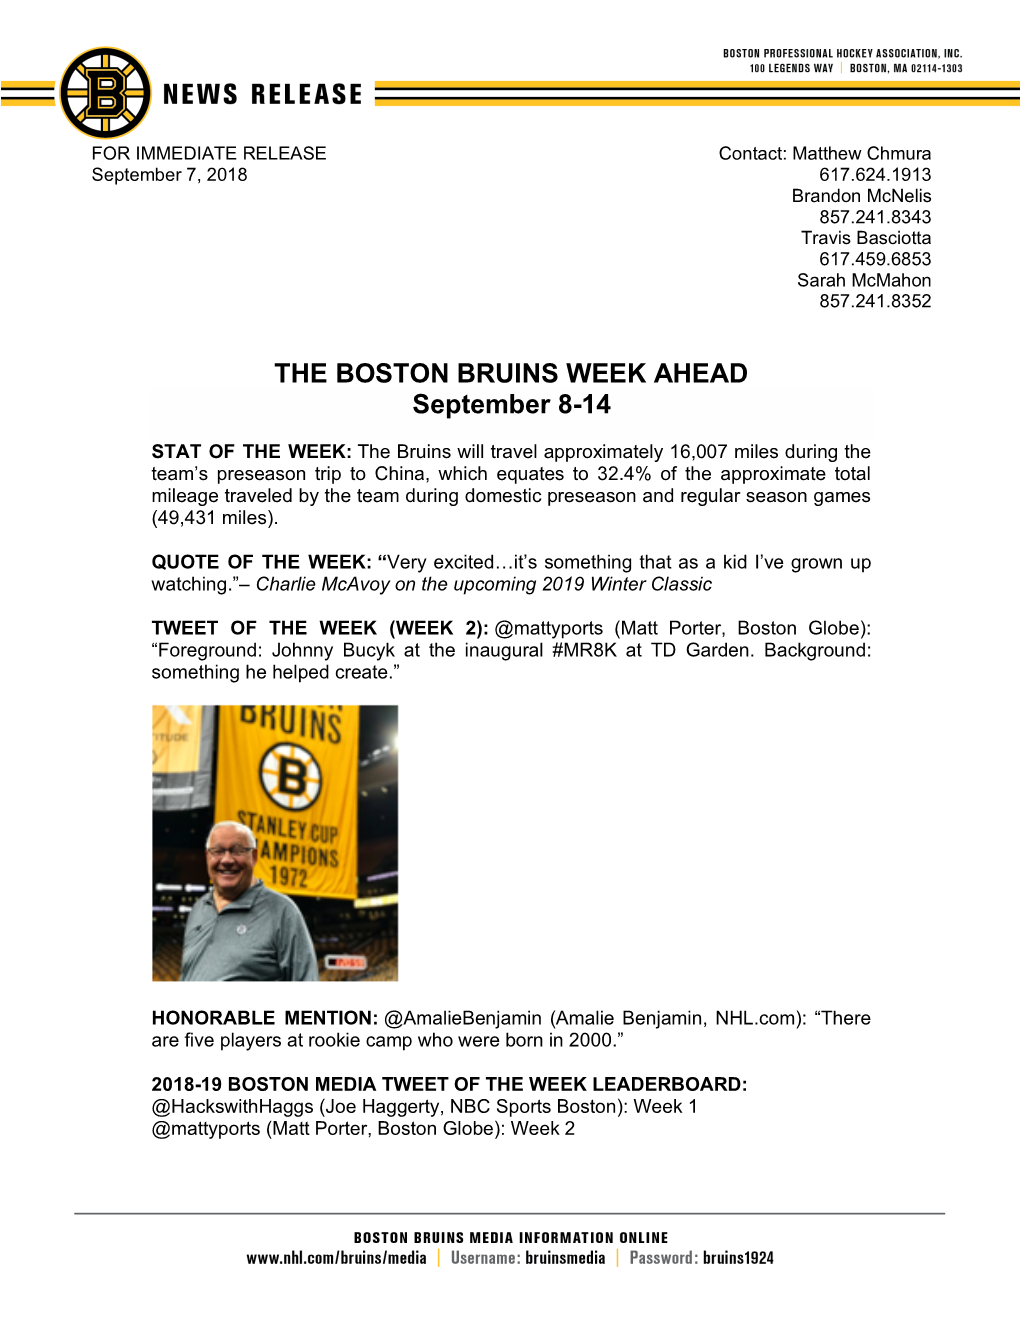 THE BOSTON BRUINS WEEK AHEAD September 8-14